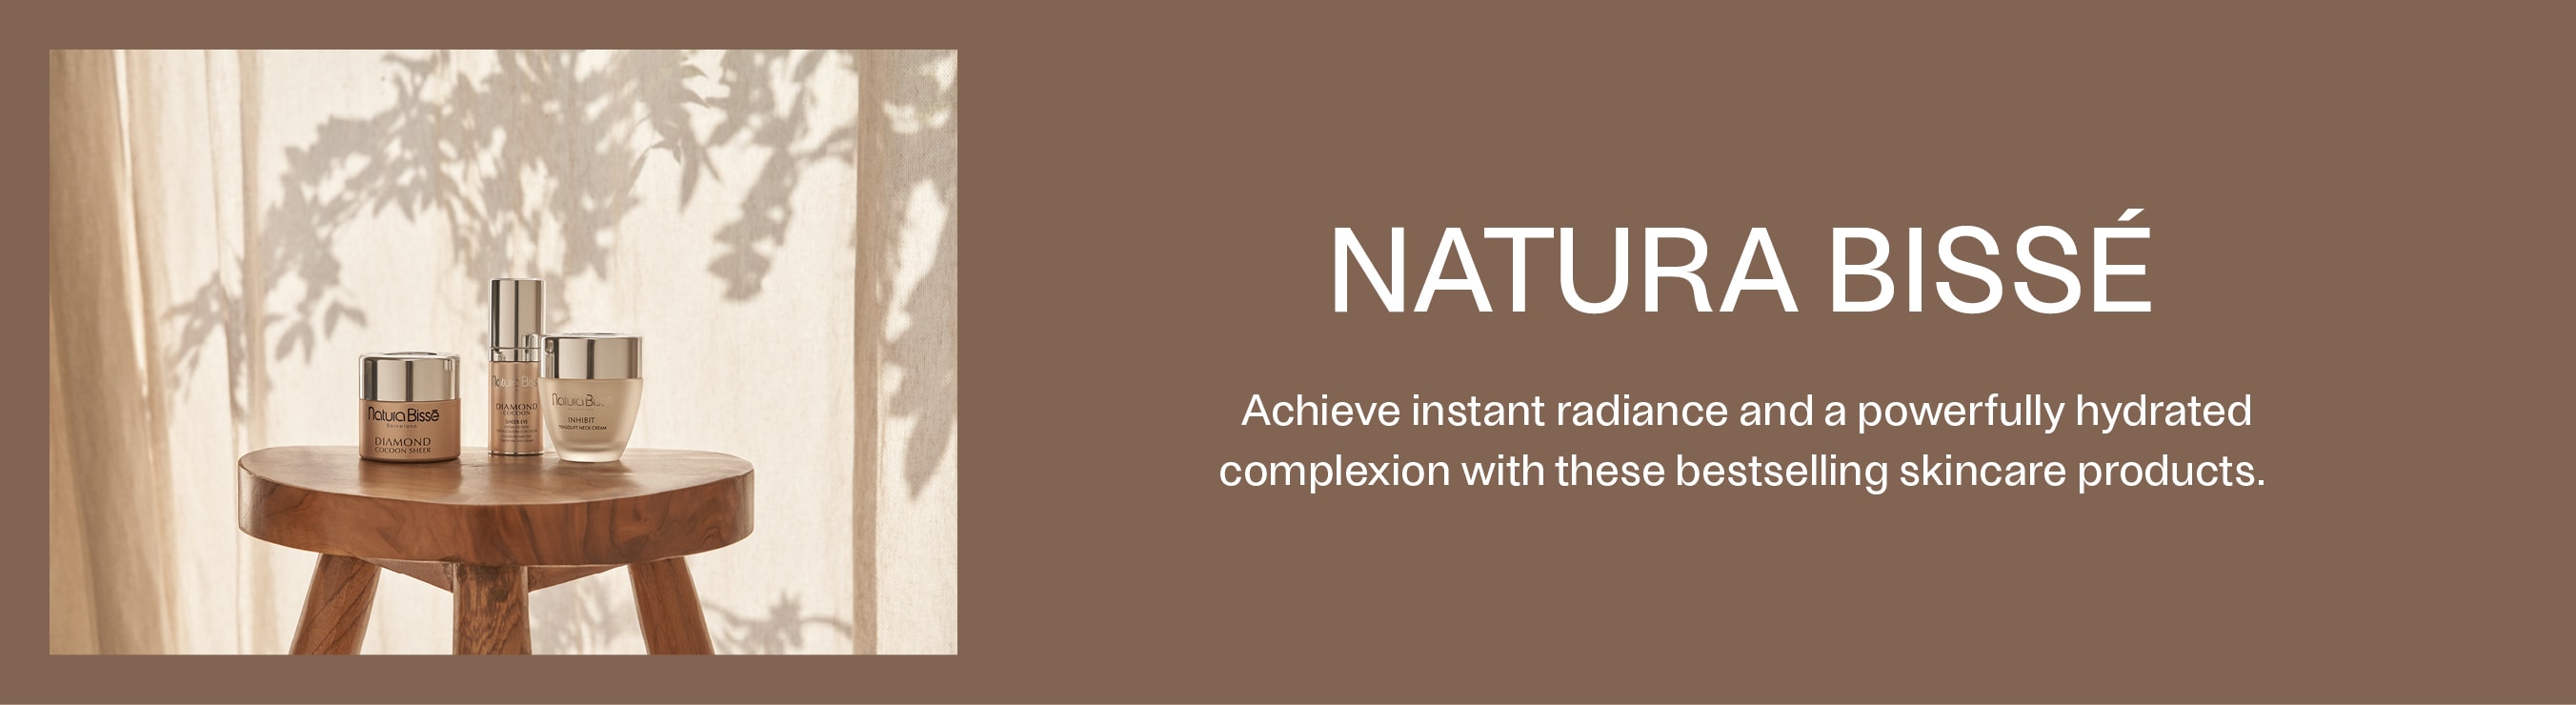 Natura Bissé - Skin Care Shop Online